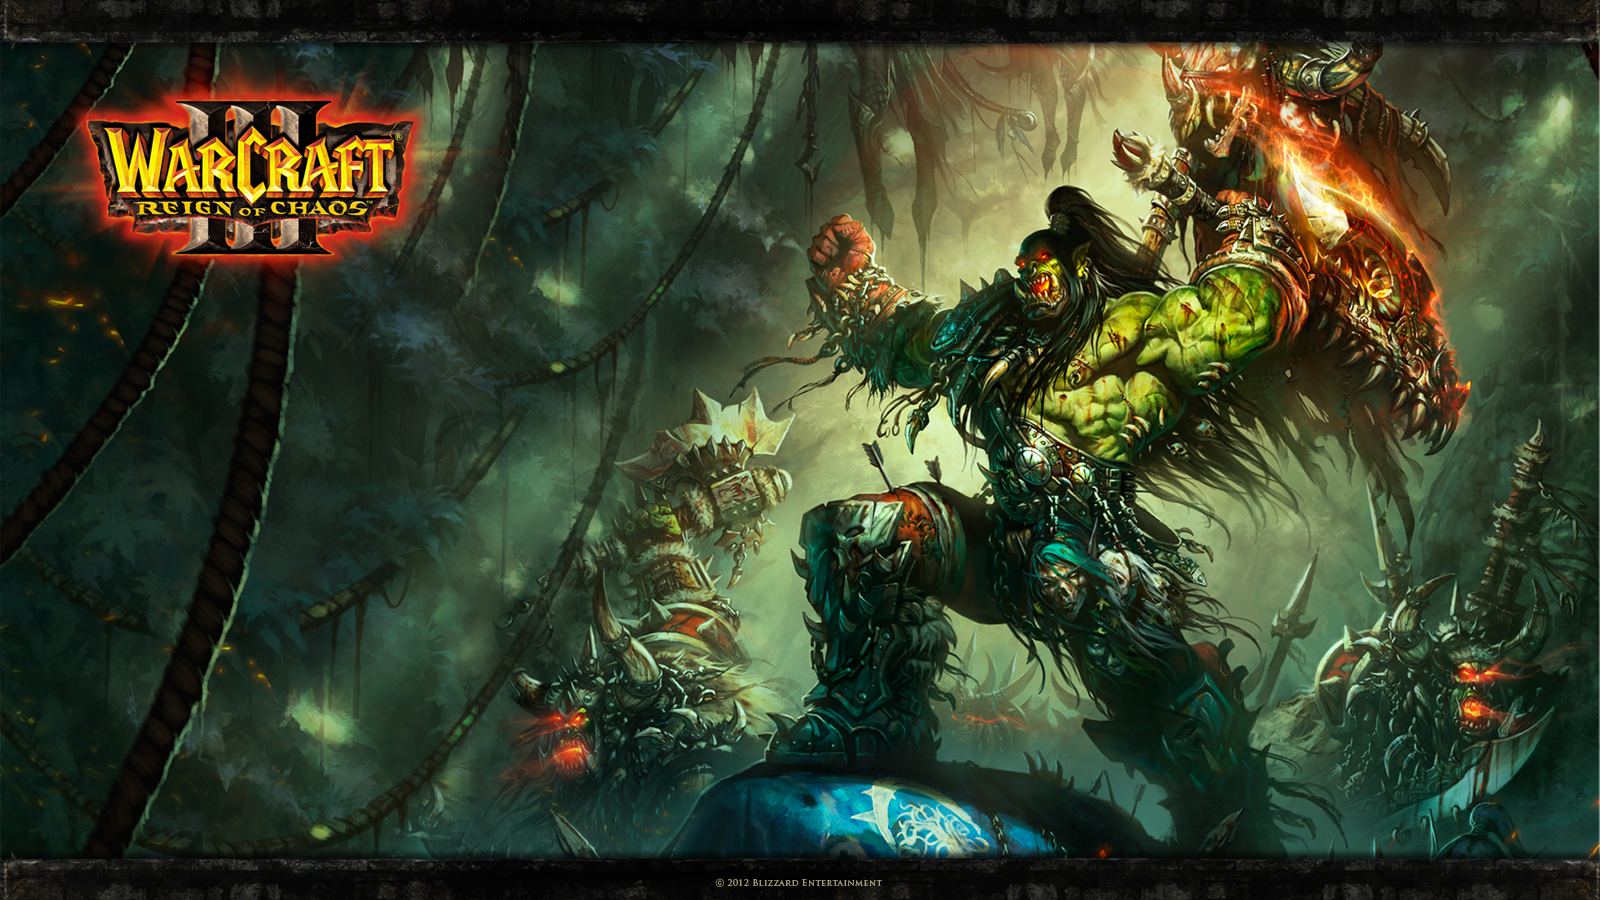  cran Histoire de Warcraft et 10 images du JCC Warcraft People